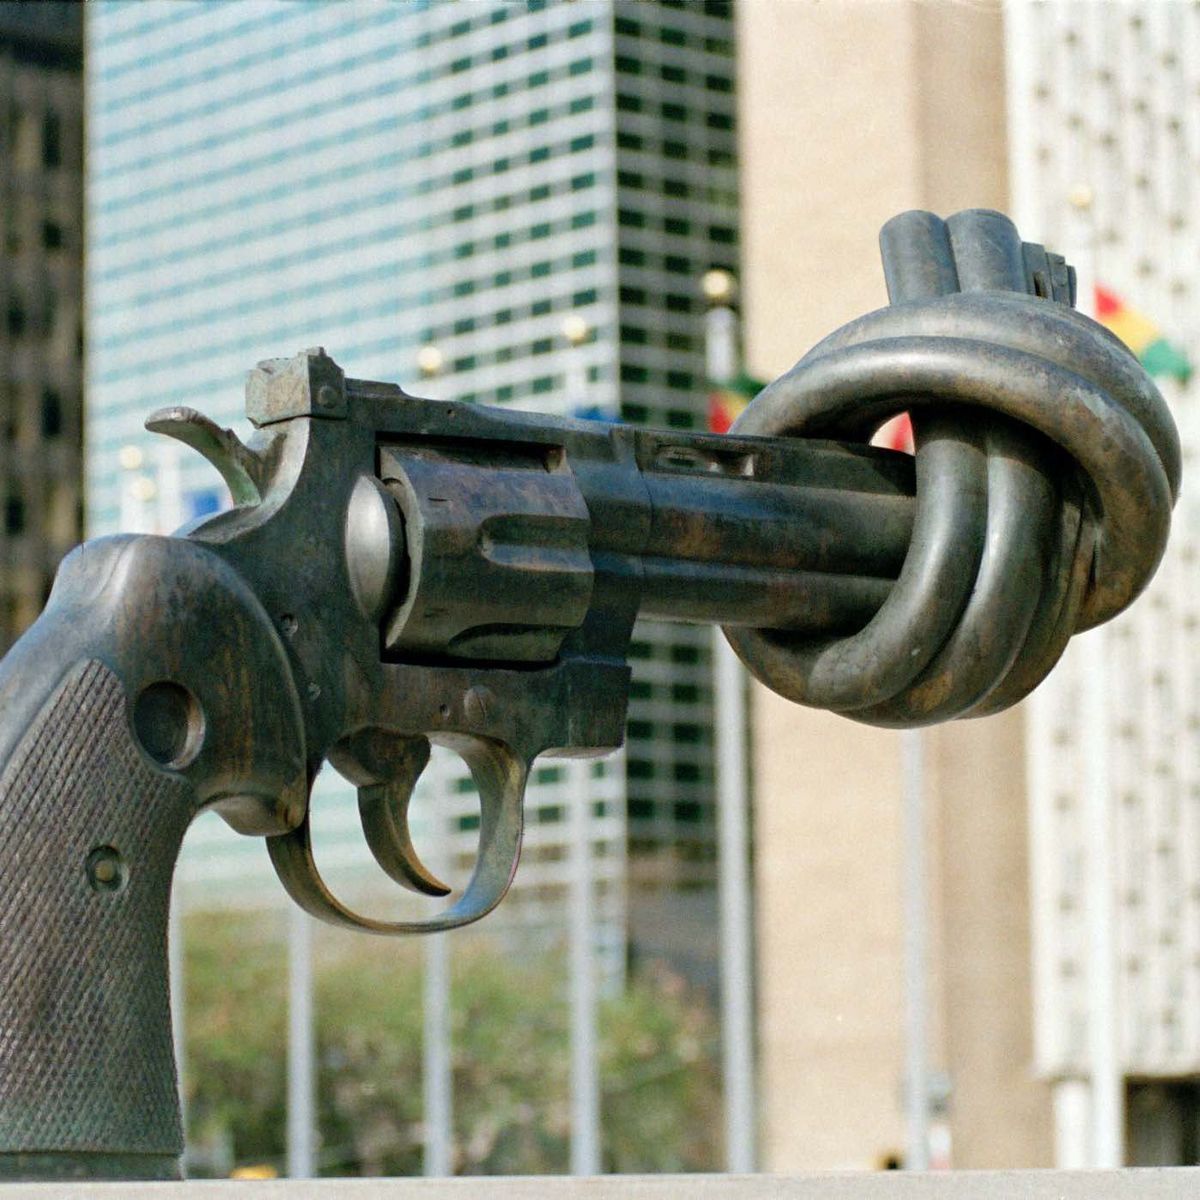 Die Bronzenachbildung zeigt einen 45-Kaliber-Revolver, dessen Lauf verknotet ist. Im Hintergrund sieht man die Gebäude des UN-Hauptquartiers in New York und einige Flaggen verschiedener Länder.